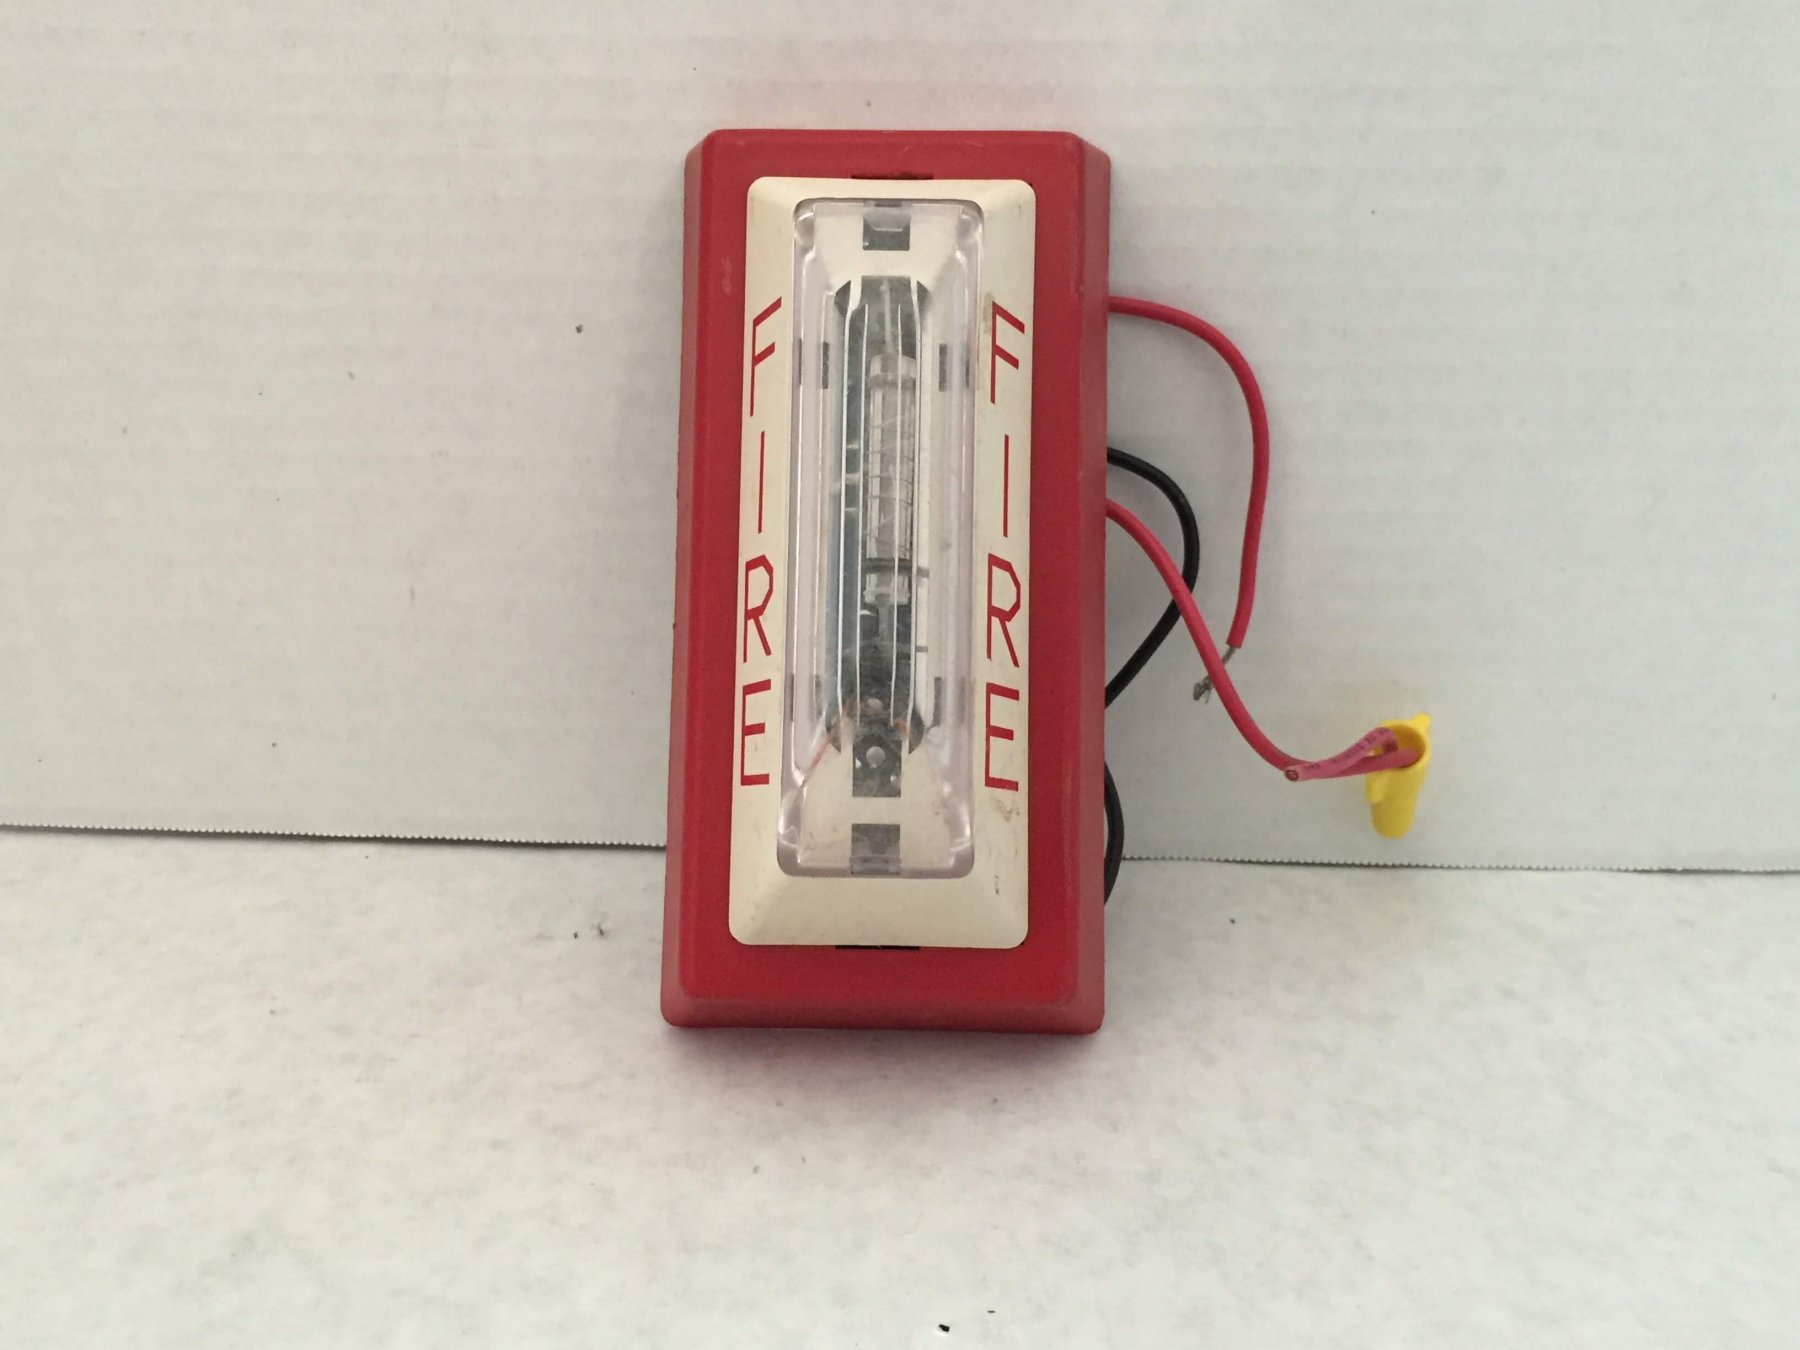 Simplex 4904-9105 - FireAlarms.tv - jjinc24/U8oL0's Fire Alarm ...